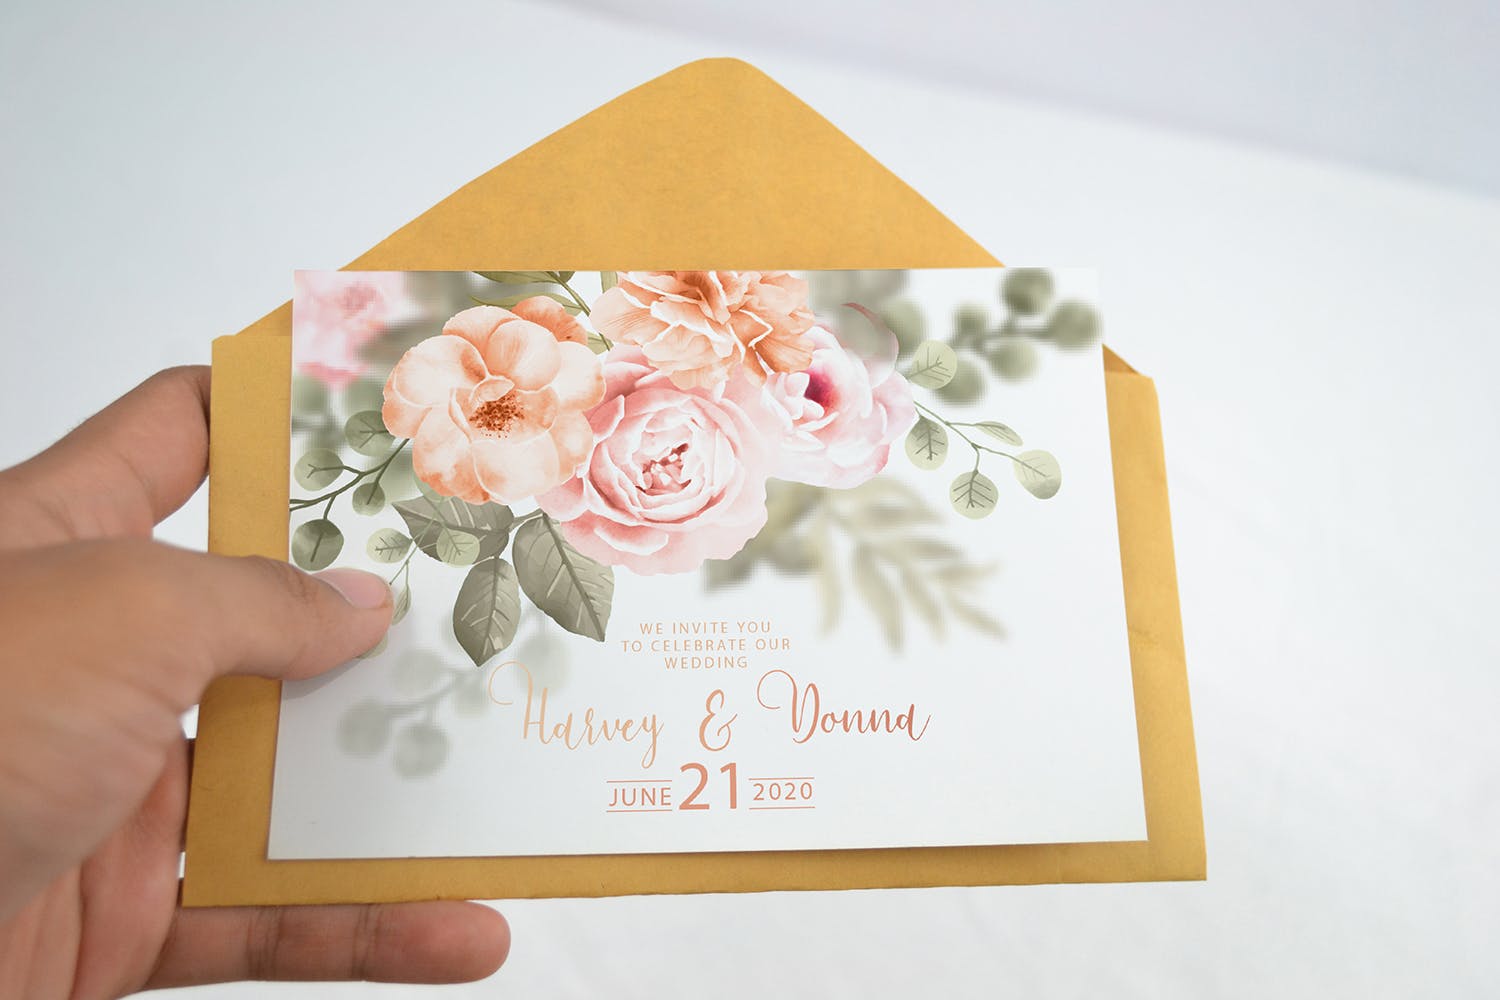 婚礼邀请函设计效果图样机蚂蚁素材精选模板v2 Realistic Wedding Invitation Card Mockup V2插图(1)